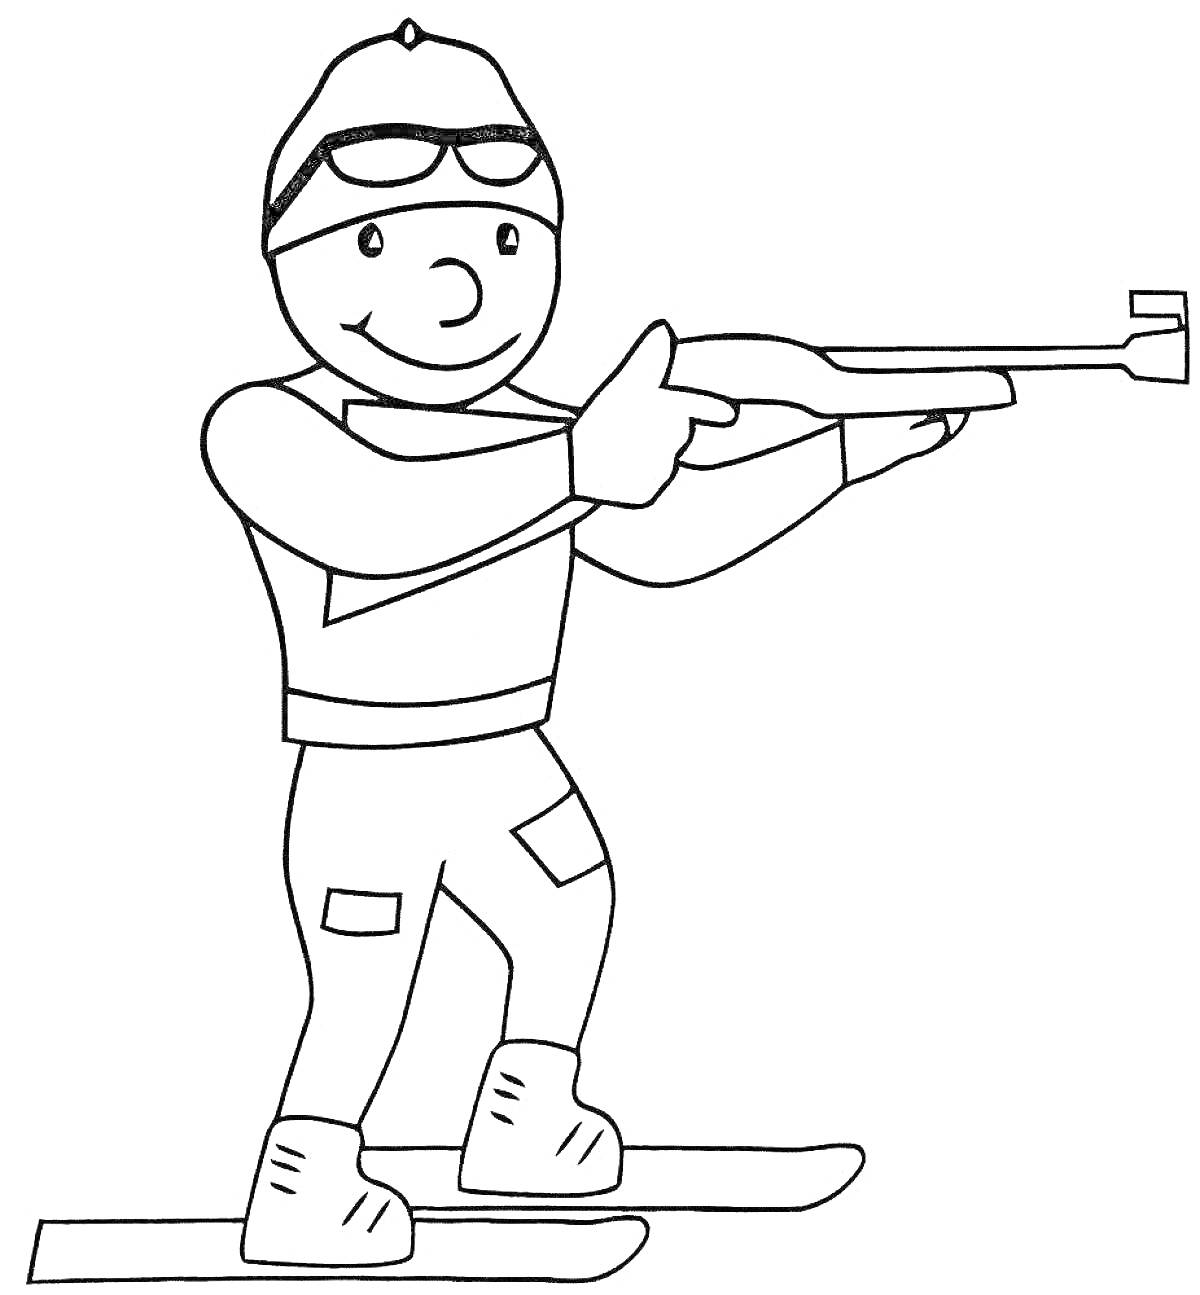 Раскраска Лыжный биатлон для детей (лыжник в очках и шапке стреляет из винтовки)